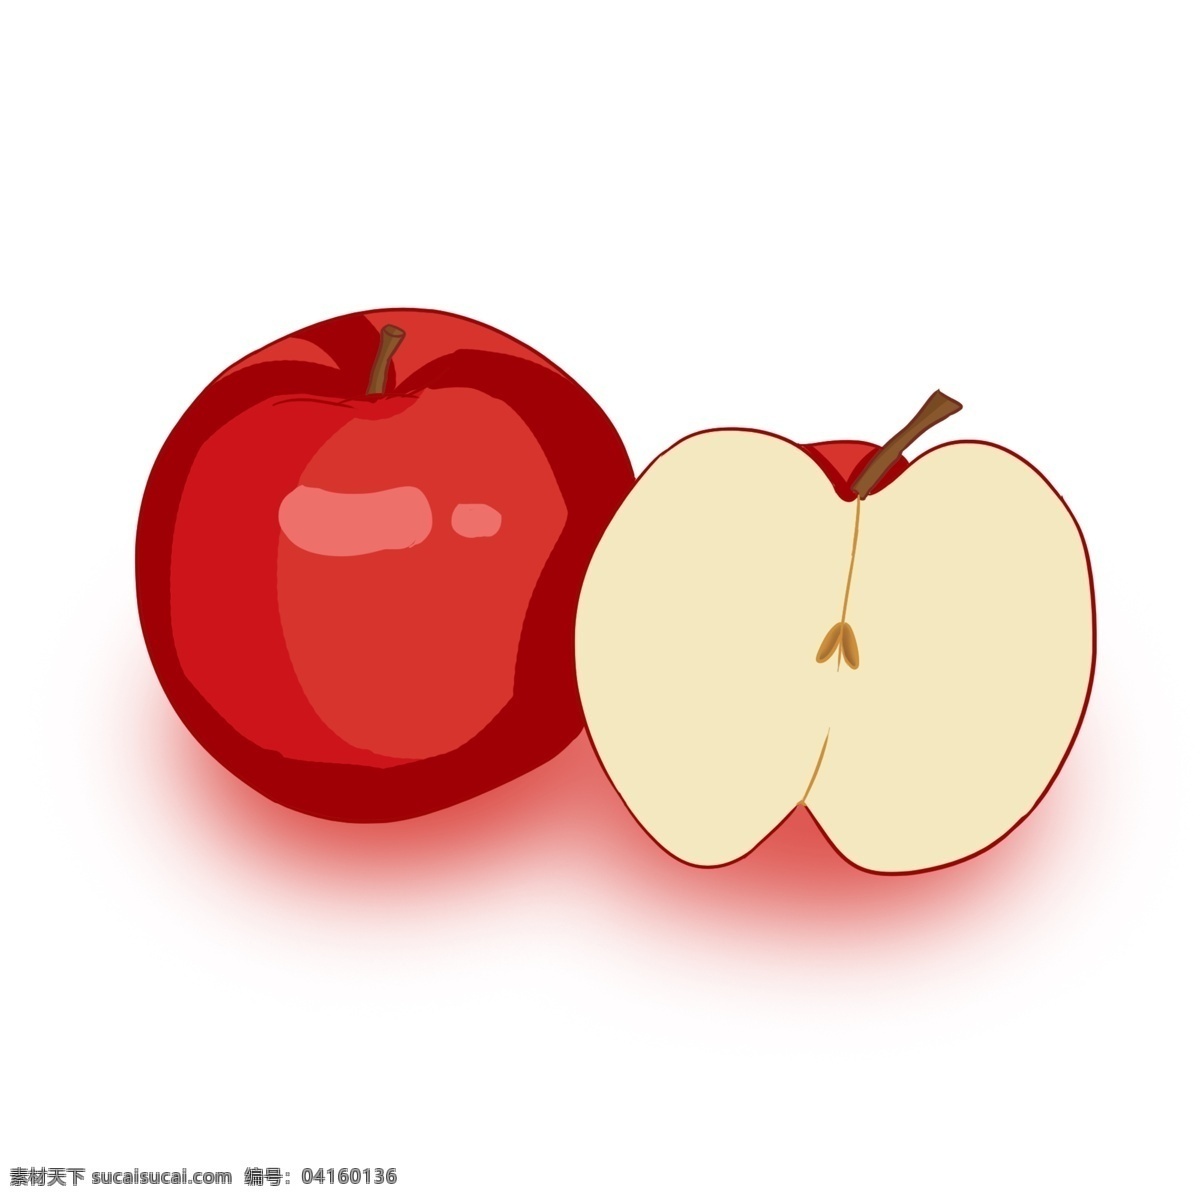 中国 风 手绘 红色 苹果 一半 整个 深红色 平安吉祥 水果之王 装饰 贴画 中国红 亮色 水果